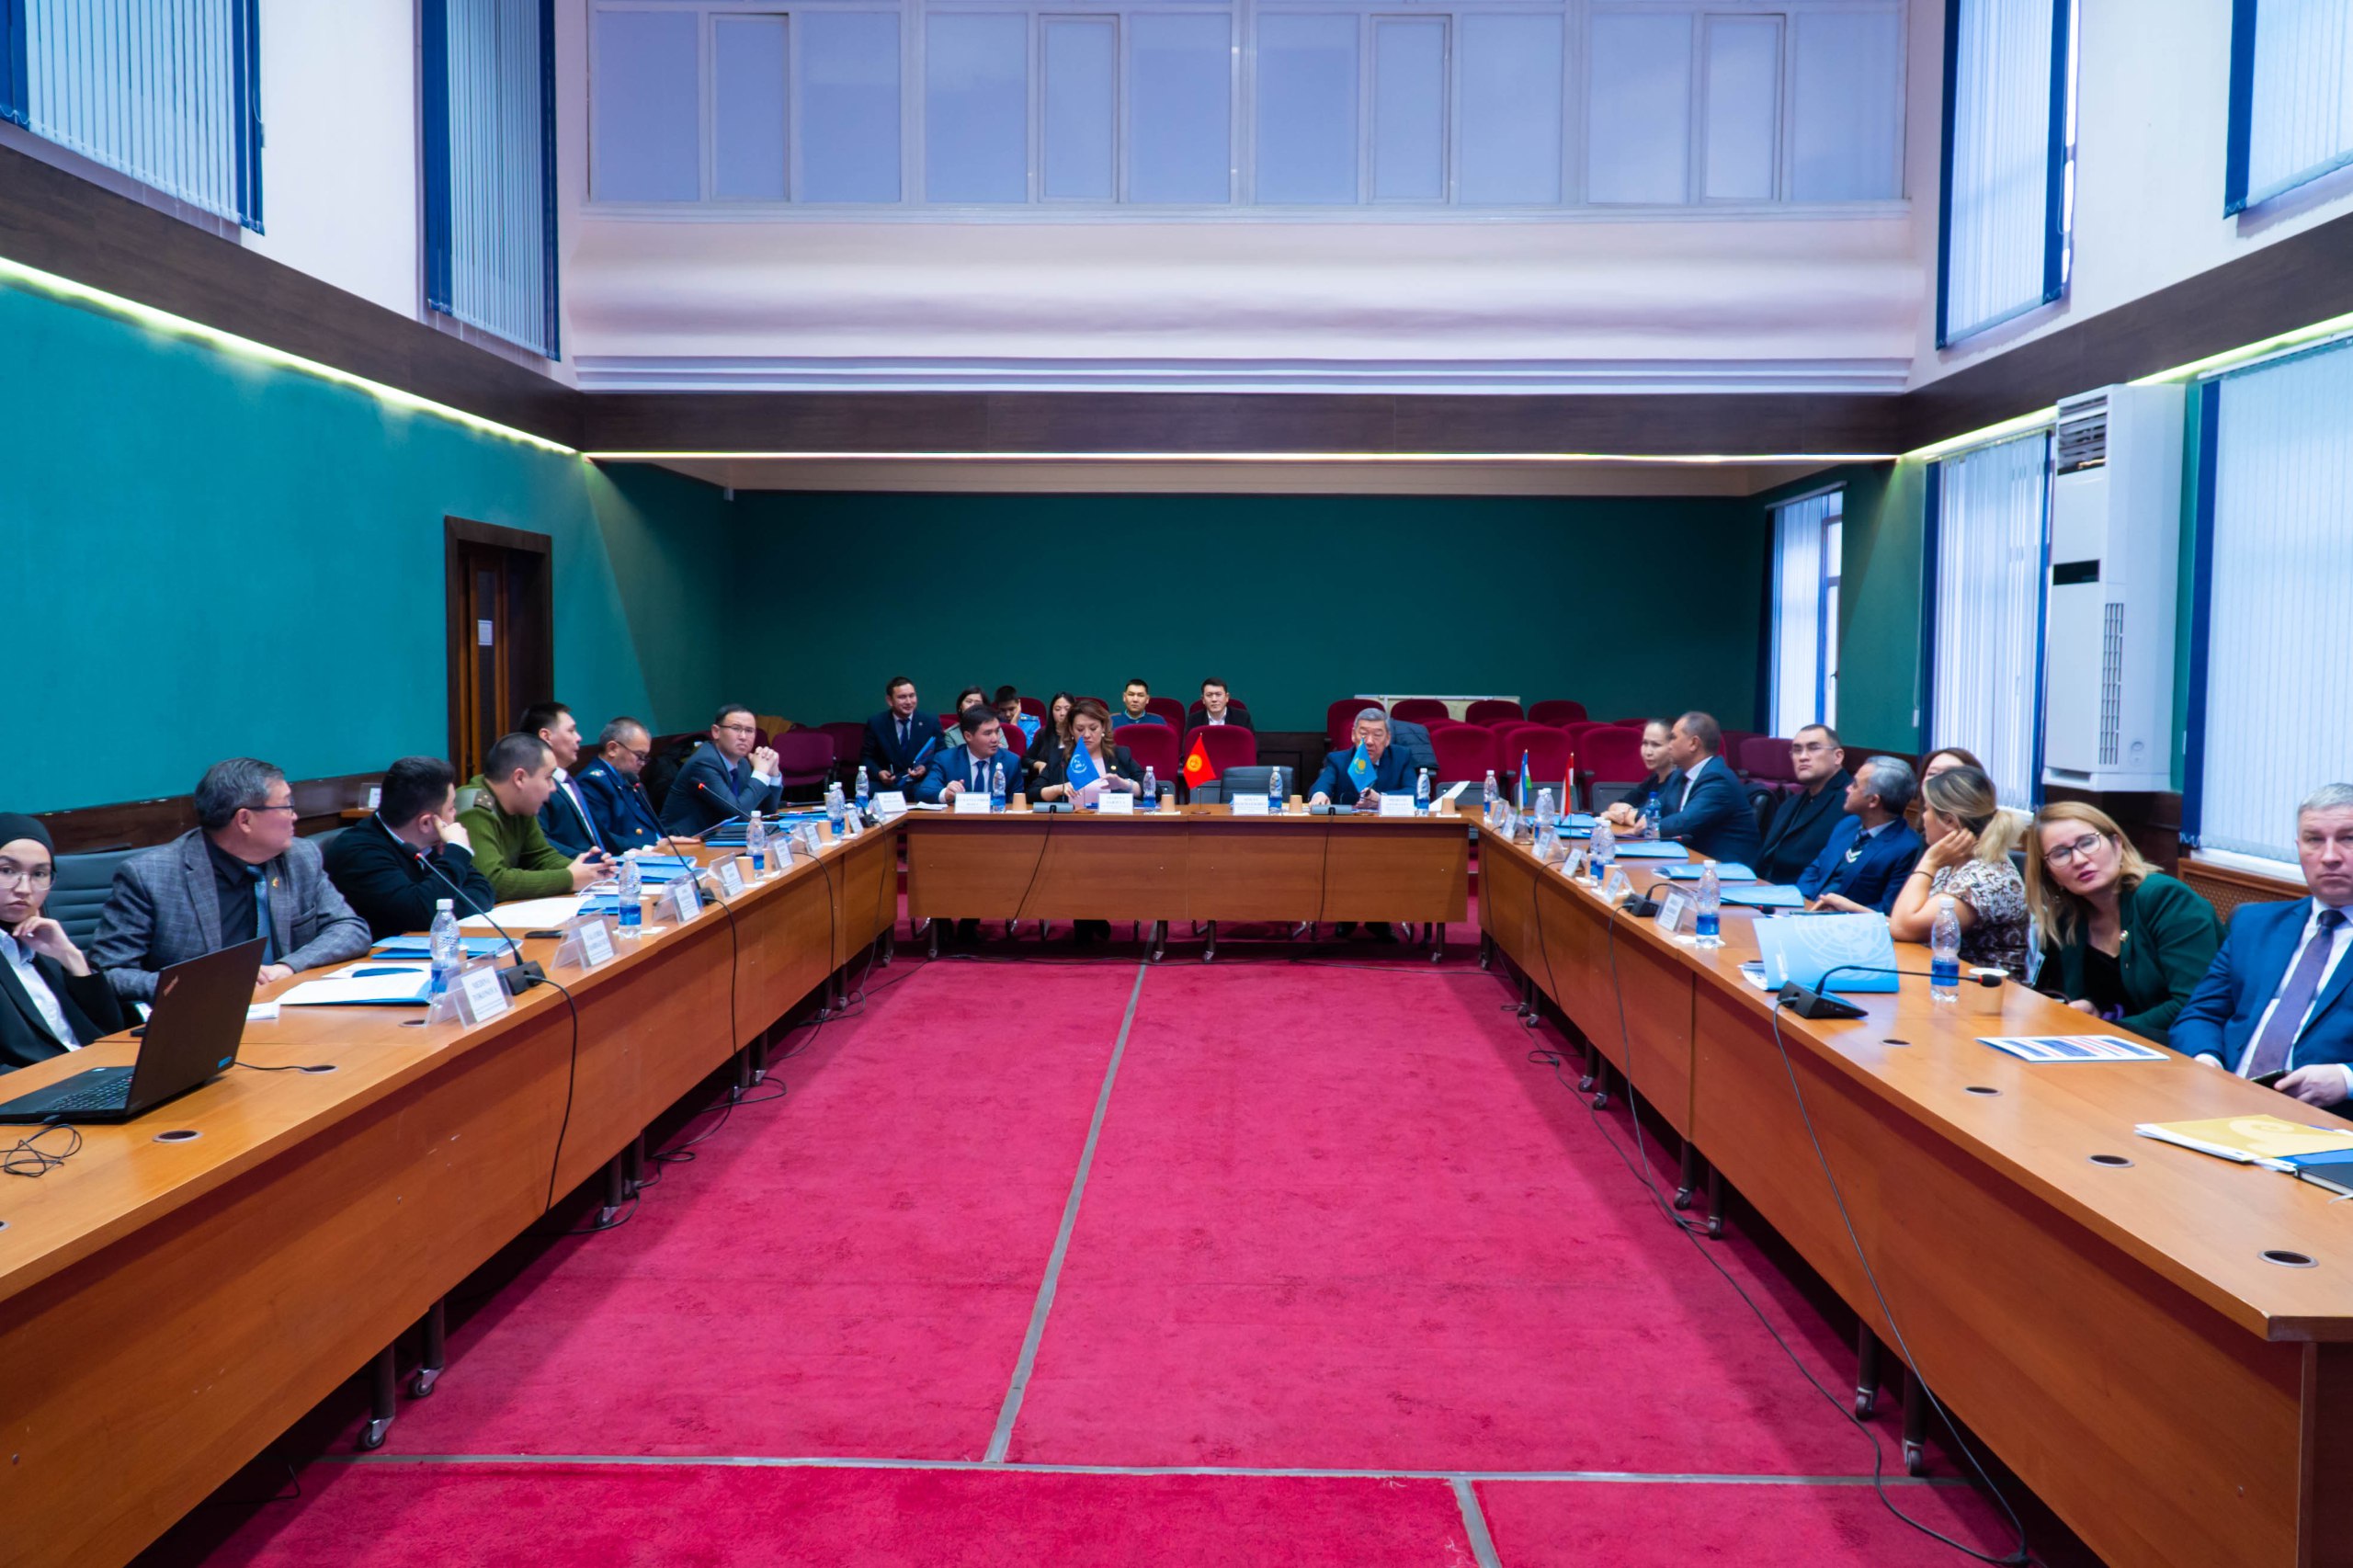 Состоялось рабочая встреча в рамках обсуждения Программы Управления ООН по наркотикам и преступности для Центральной Азии на 2022-2025 годы